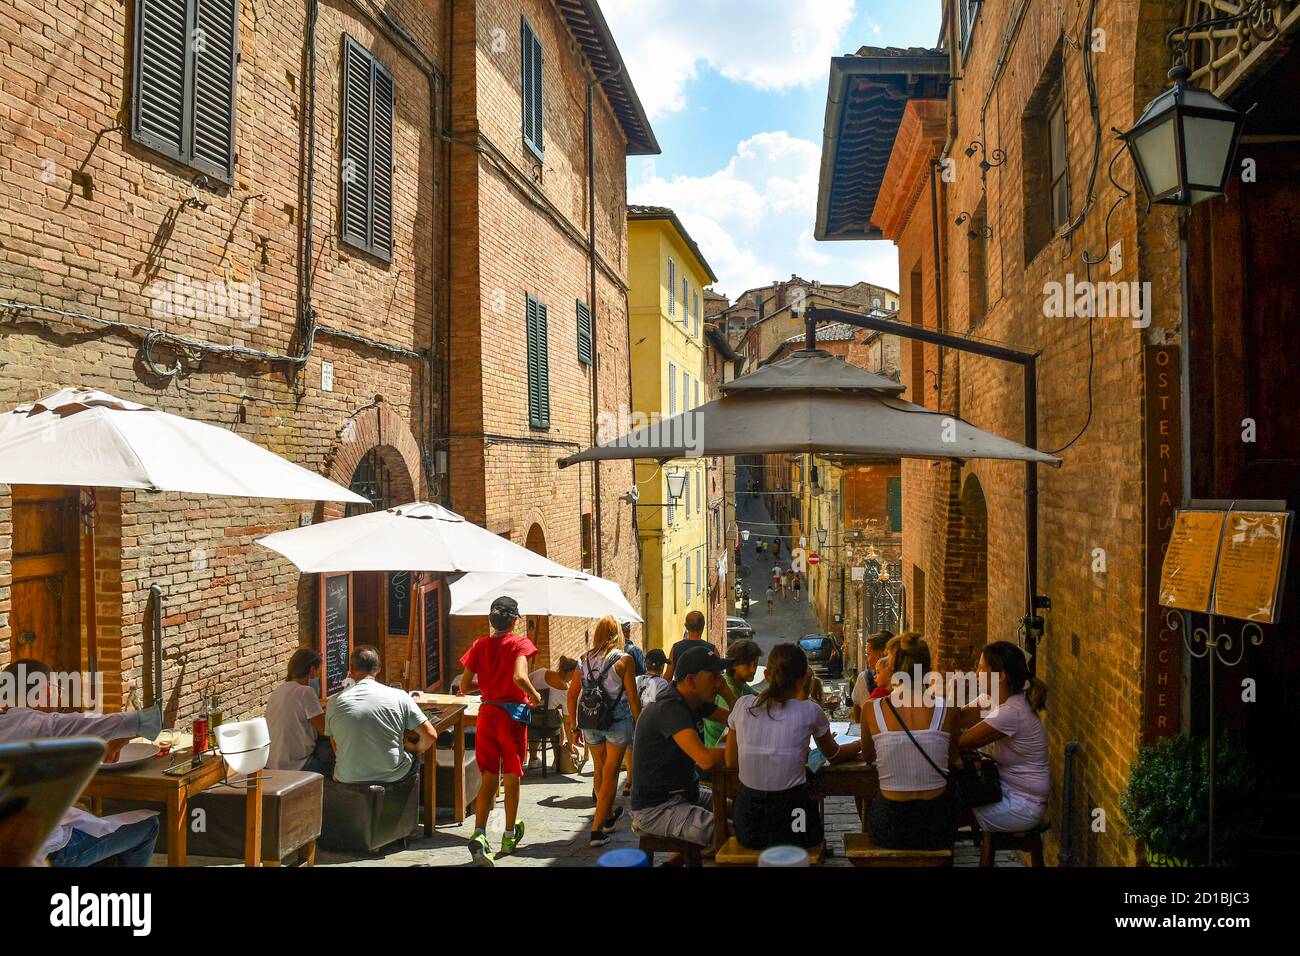 Touristes dans les restaurants de plein air de Costa Sant'Antonio, une ruelle étroite dans le centre historique de Sienne, UNESCO W.H. Site, en été, Toscane, Italie Banque D'Images